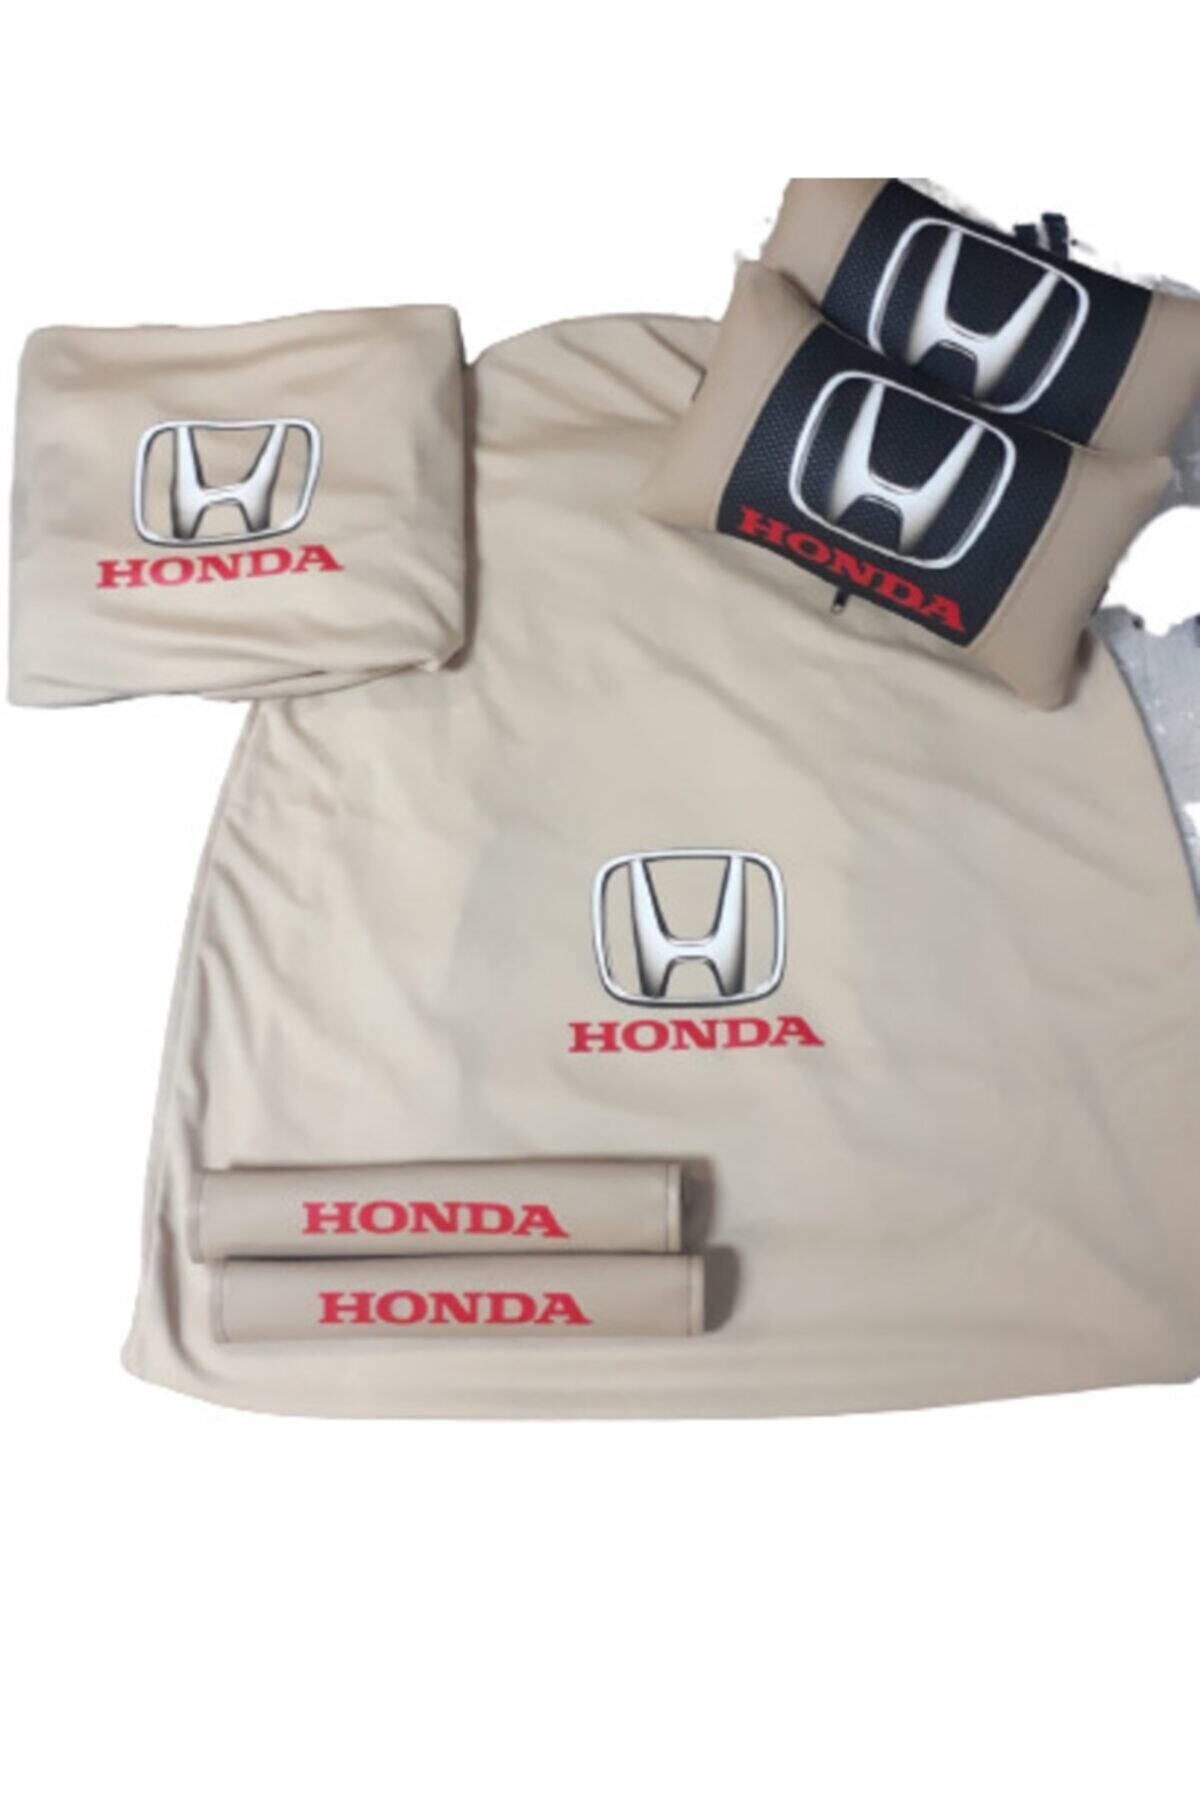 Honda Bej Penye Servis Kılıfı,2 Adet Deri Yastık Ve 2 Adet Deri Kemerlik